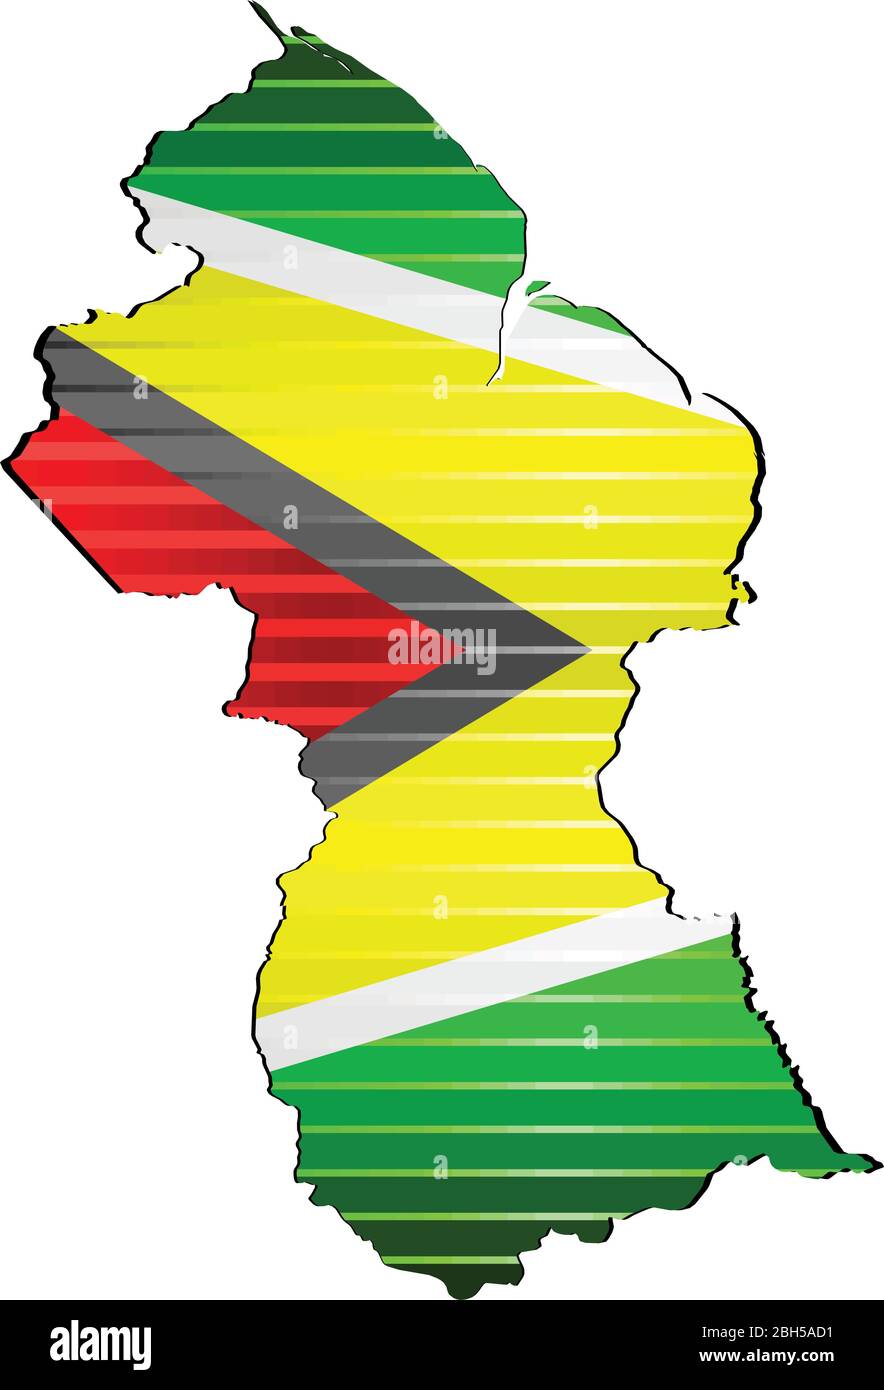 Glänzende Grunge-Karte des Guyana - Illustration, dreidimensionale Karte von Guyana Stock Vektor